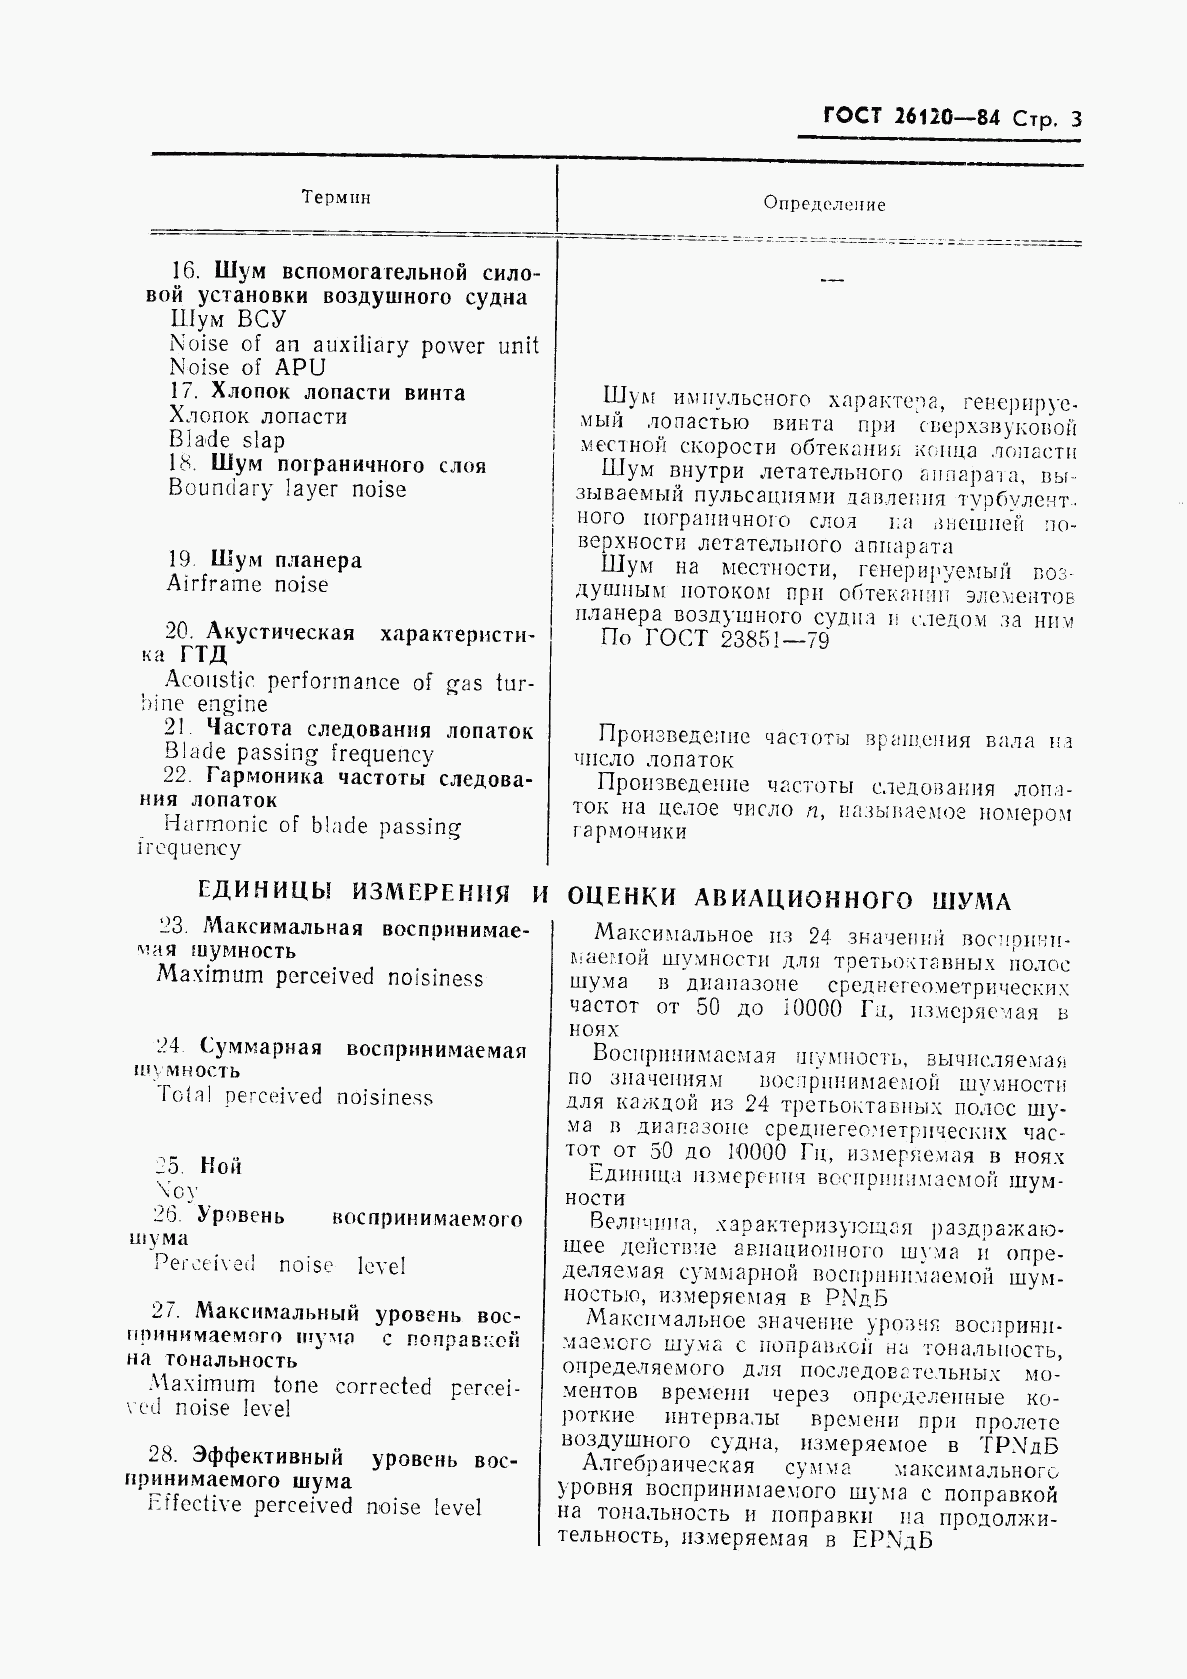 ГОСТ 26120-84, страница 4